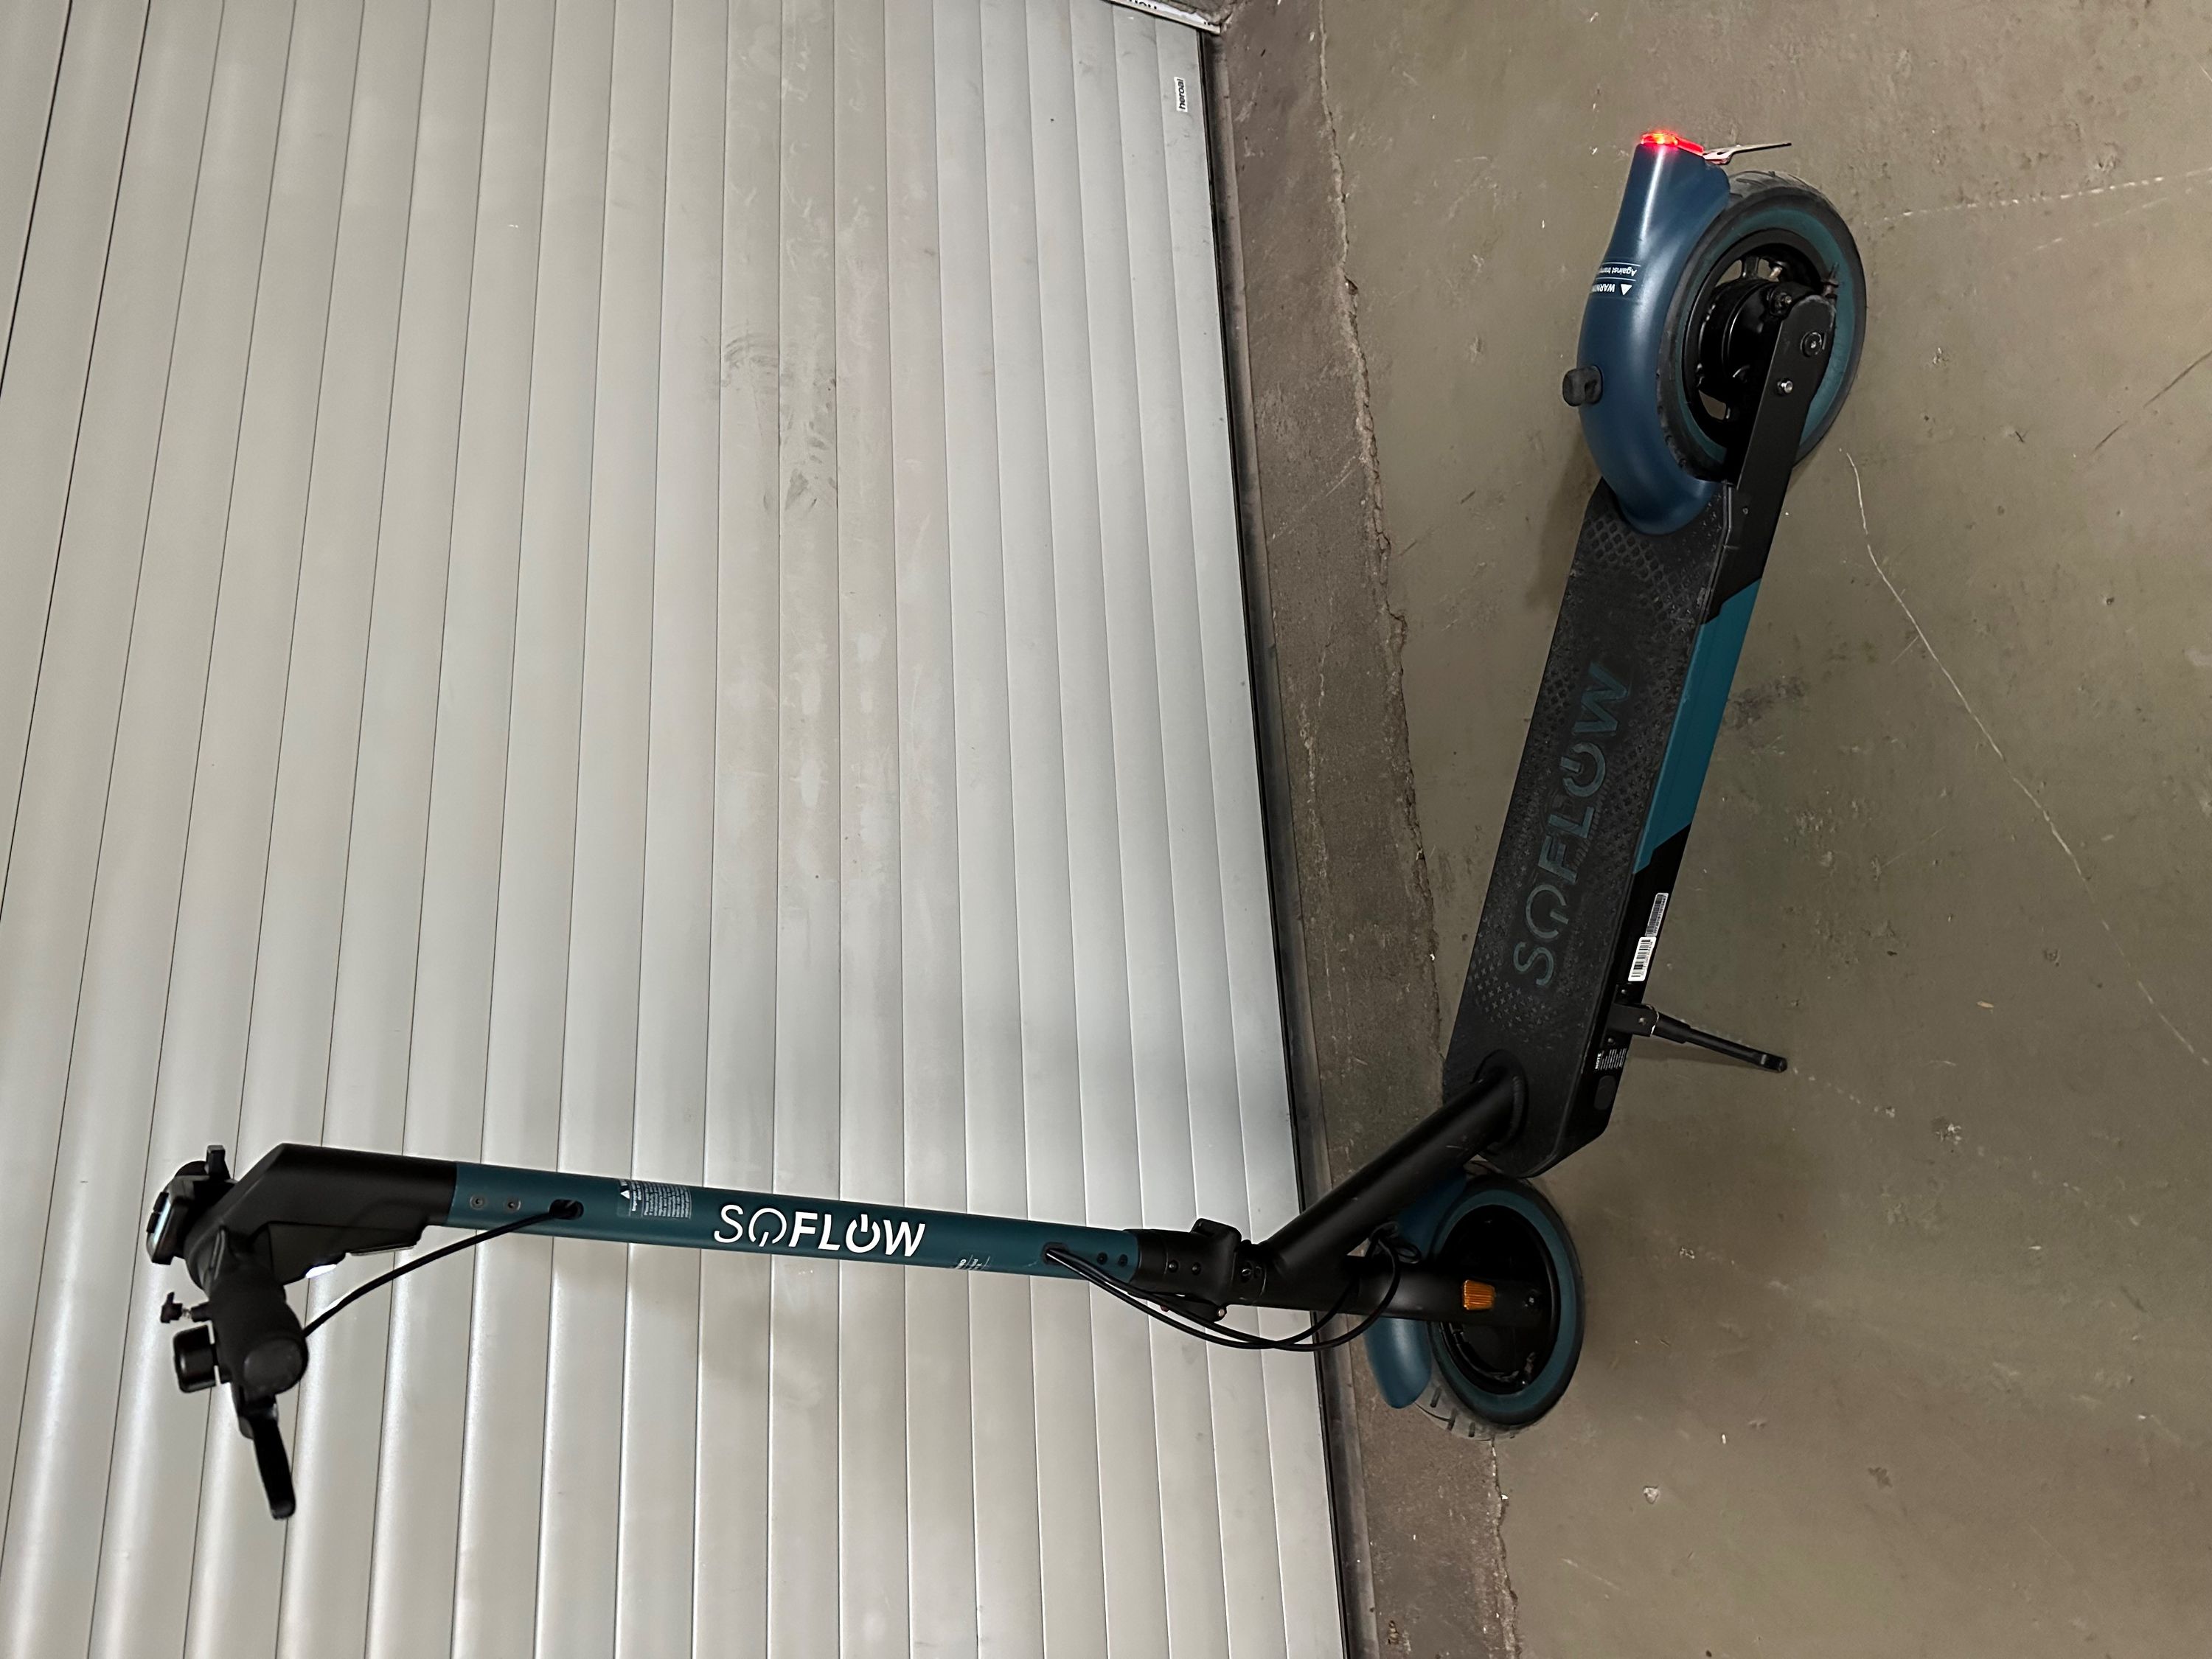 SOFLOW S06 E-Scooter Elektro-Roller türkis mit Straßenzul. vom Händler | eBay 20km/h